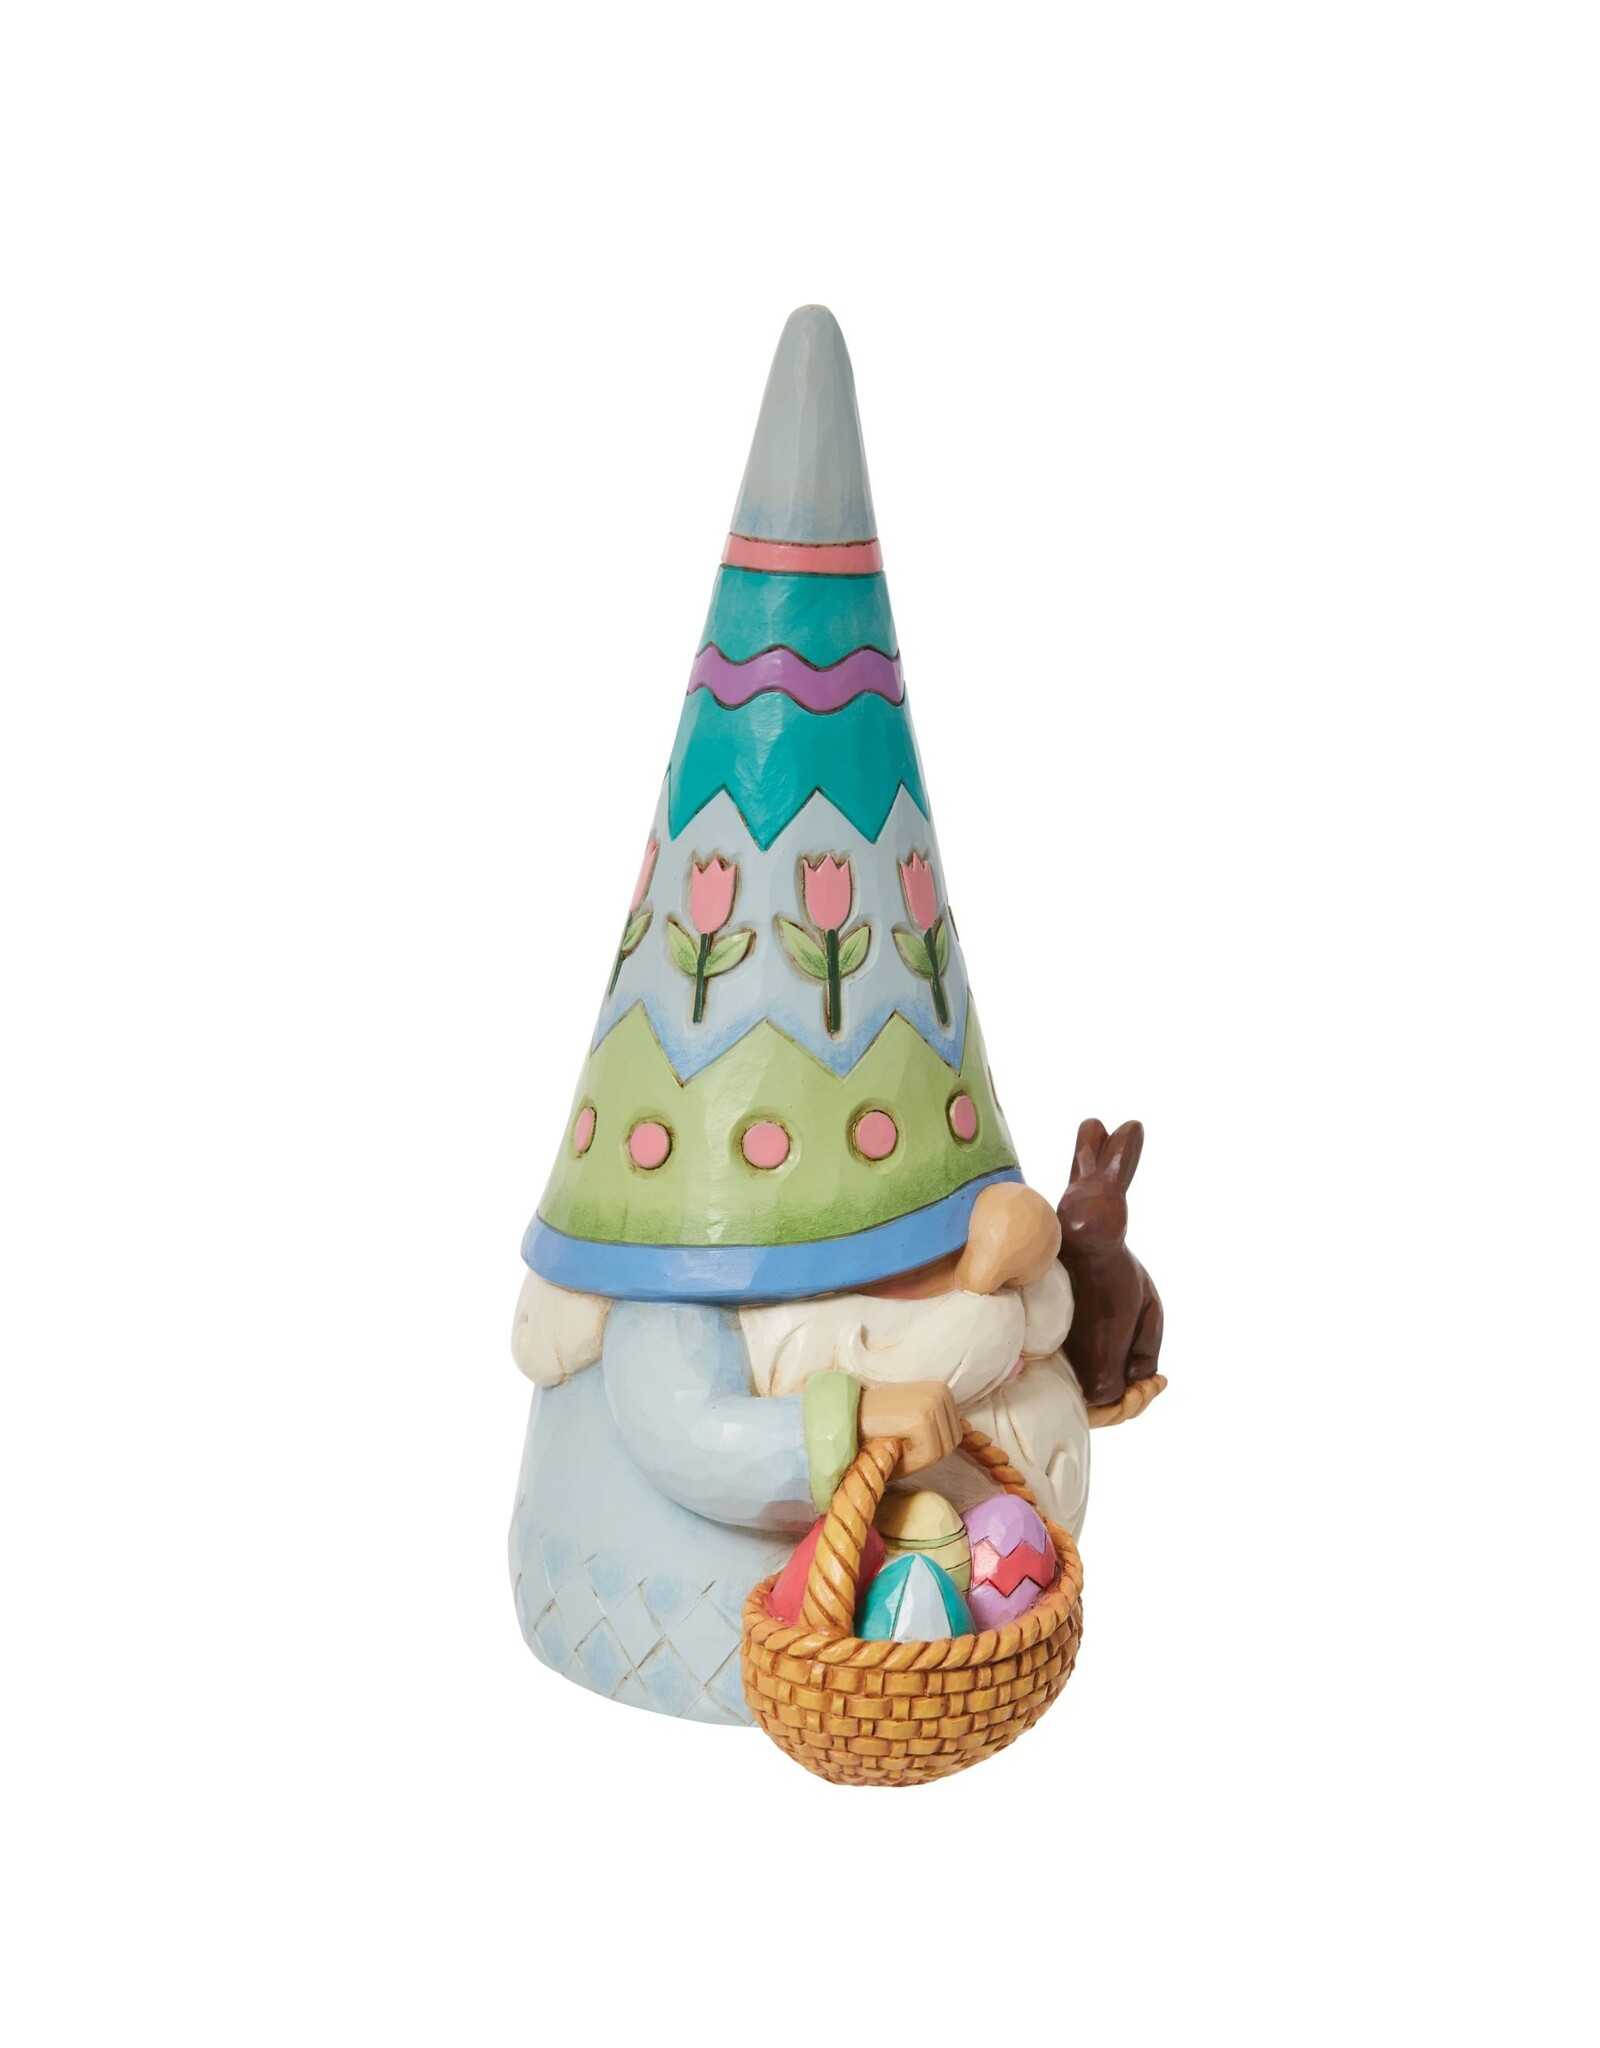 Jim Shore "Sweet Easter Charmer” Gnome